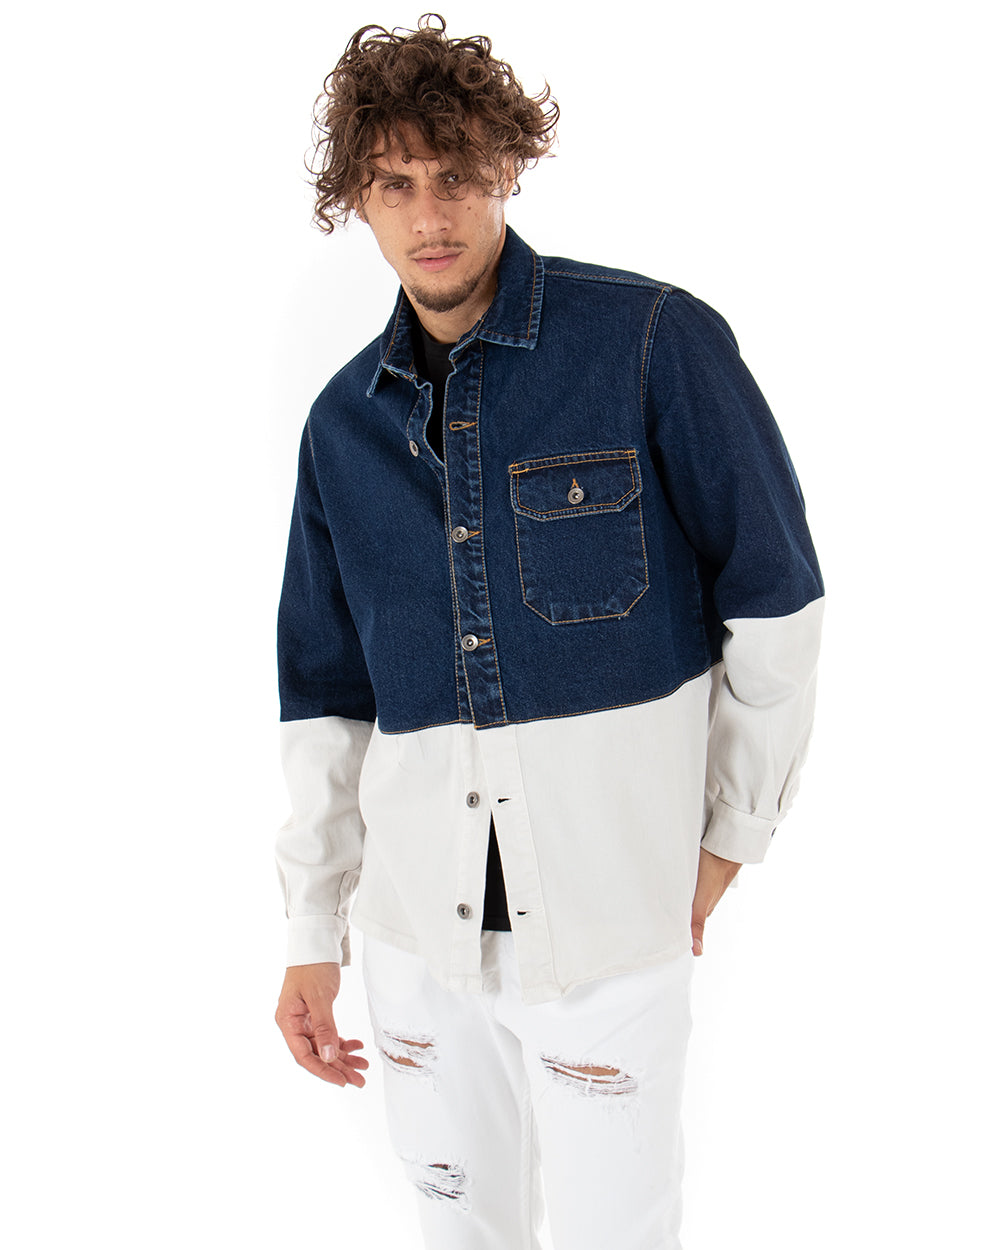 Giubbotto Uomo Giacca Jeans Con Colletto Denim Scuro Bicolore Bianco Casual GIOSAL-G2790A